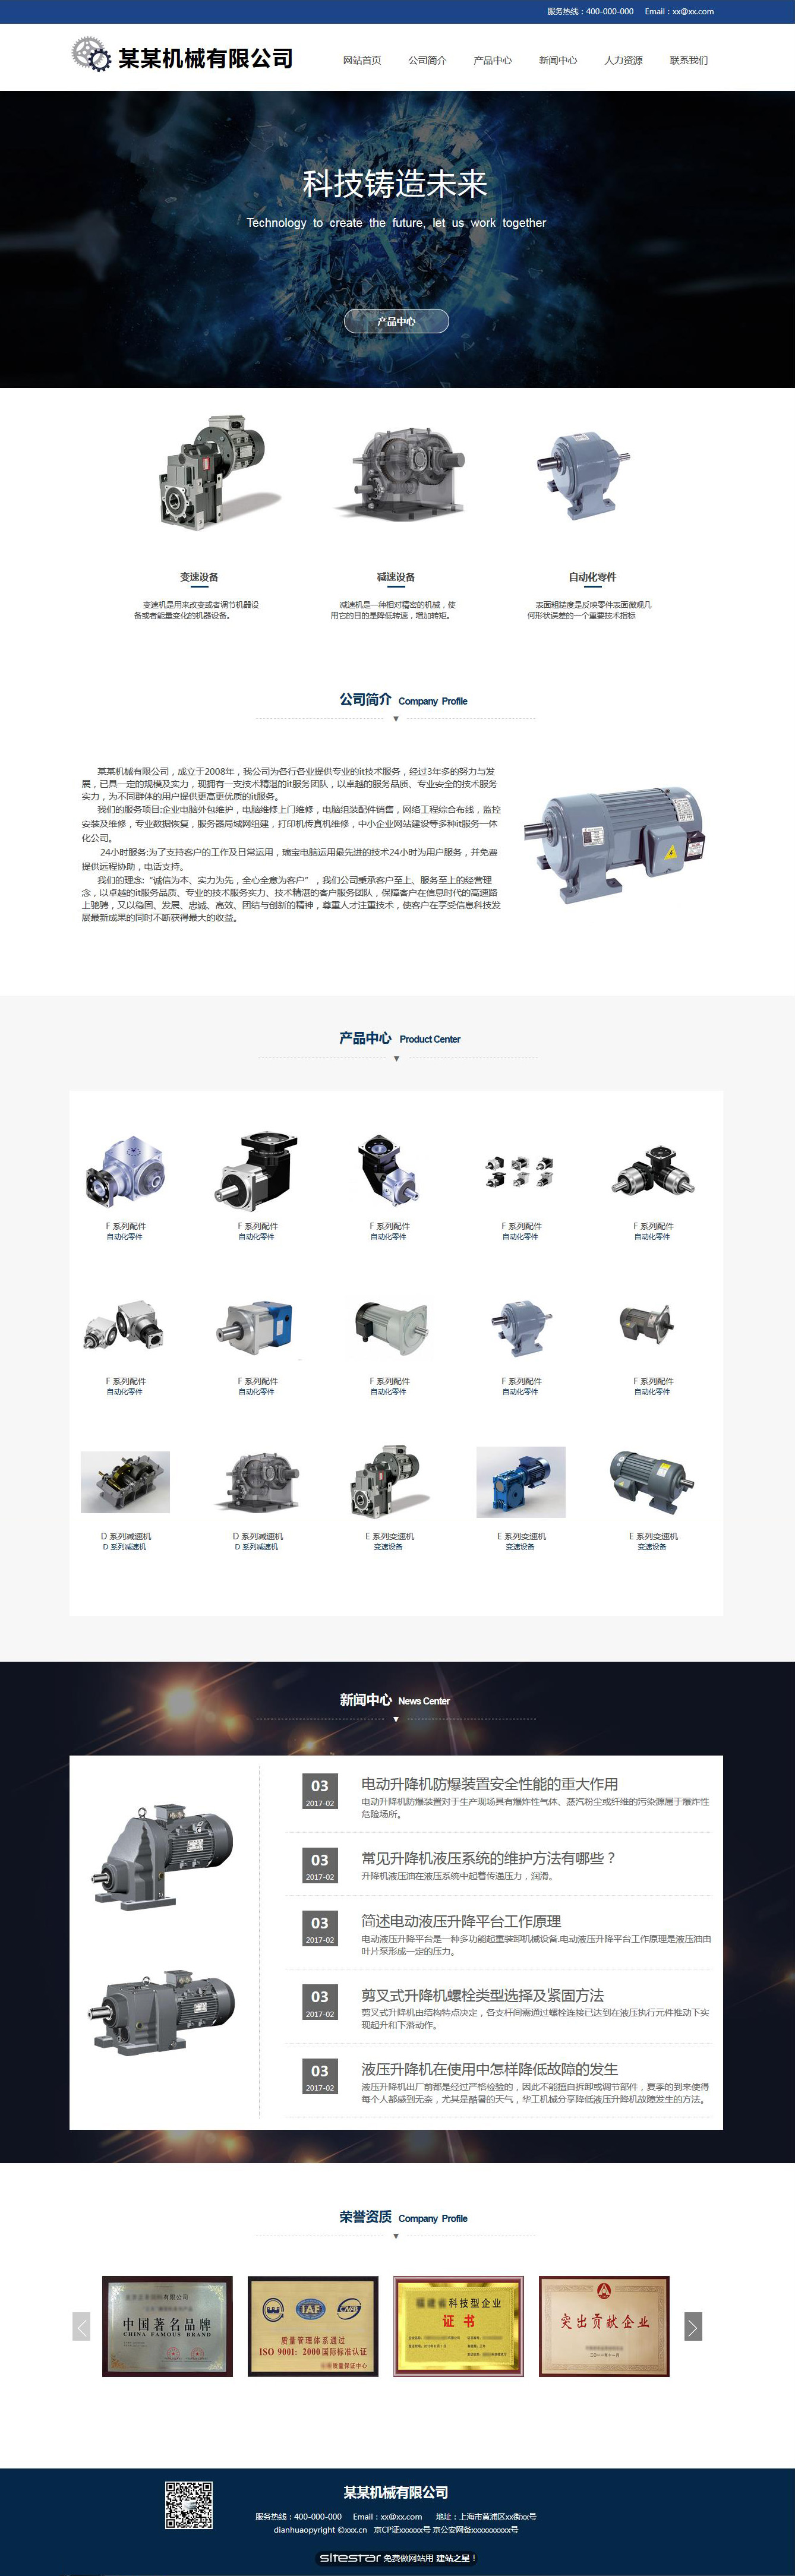 机械、工业制品网站模板-industrial-222